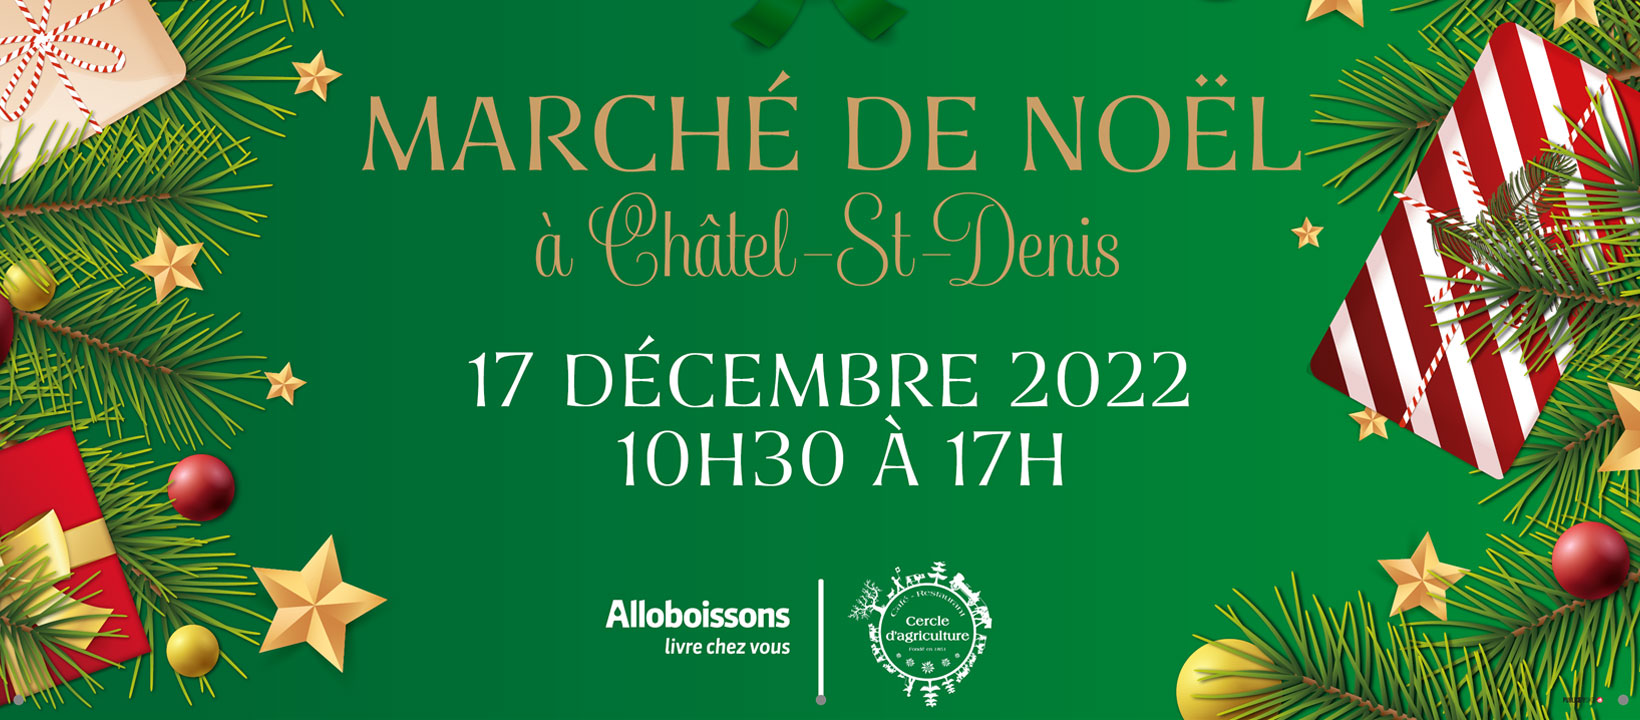 image from Marché de Noël de Châtel-St-Denis 2022